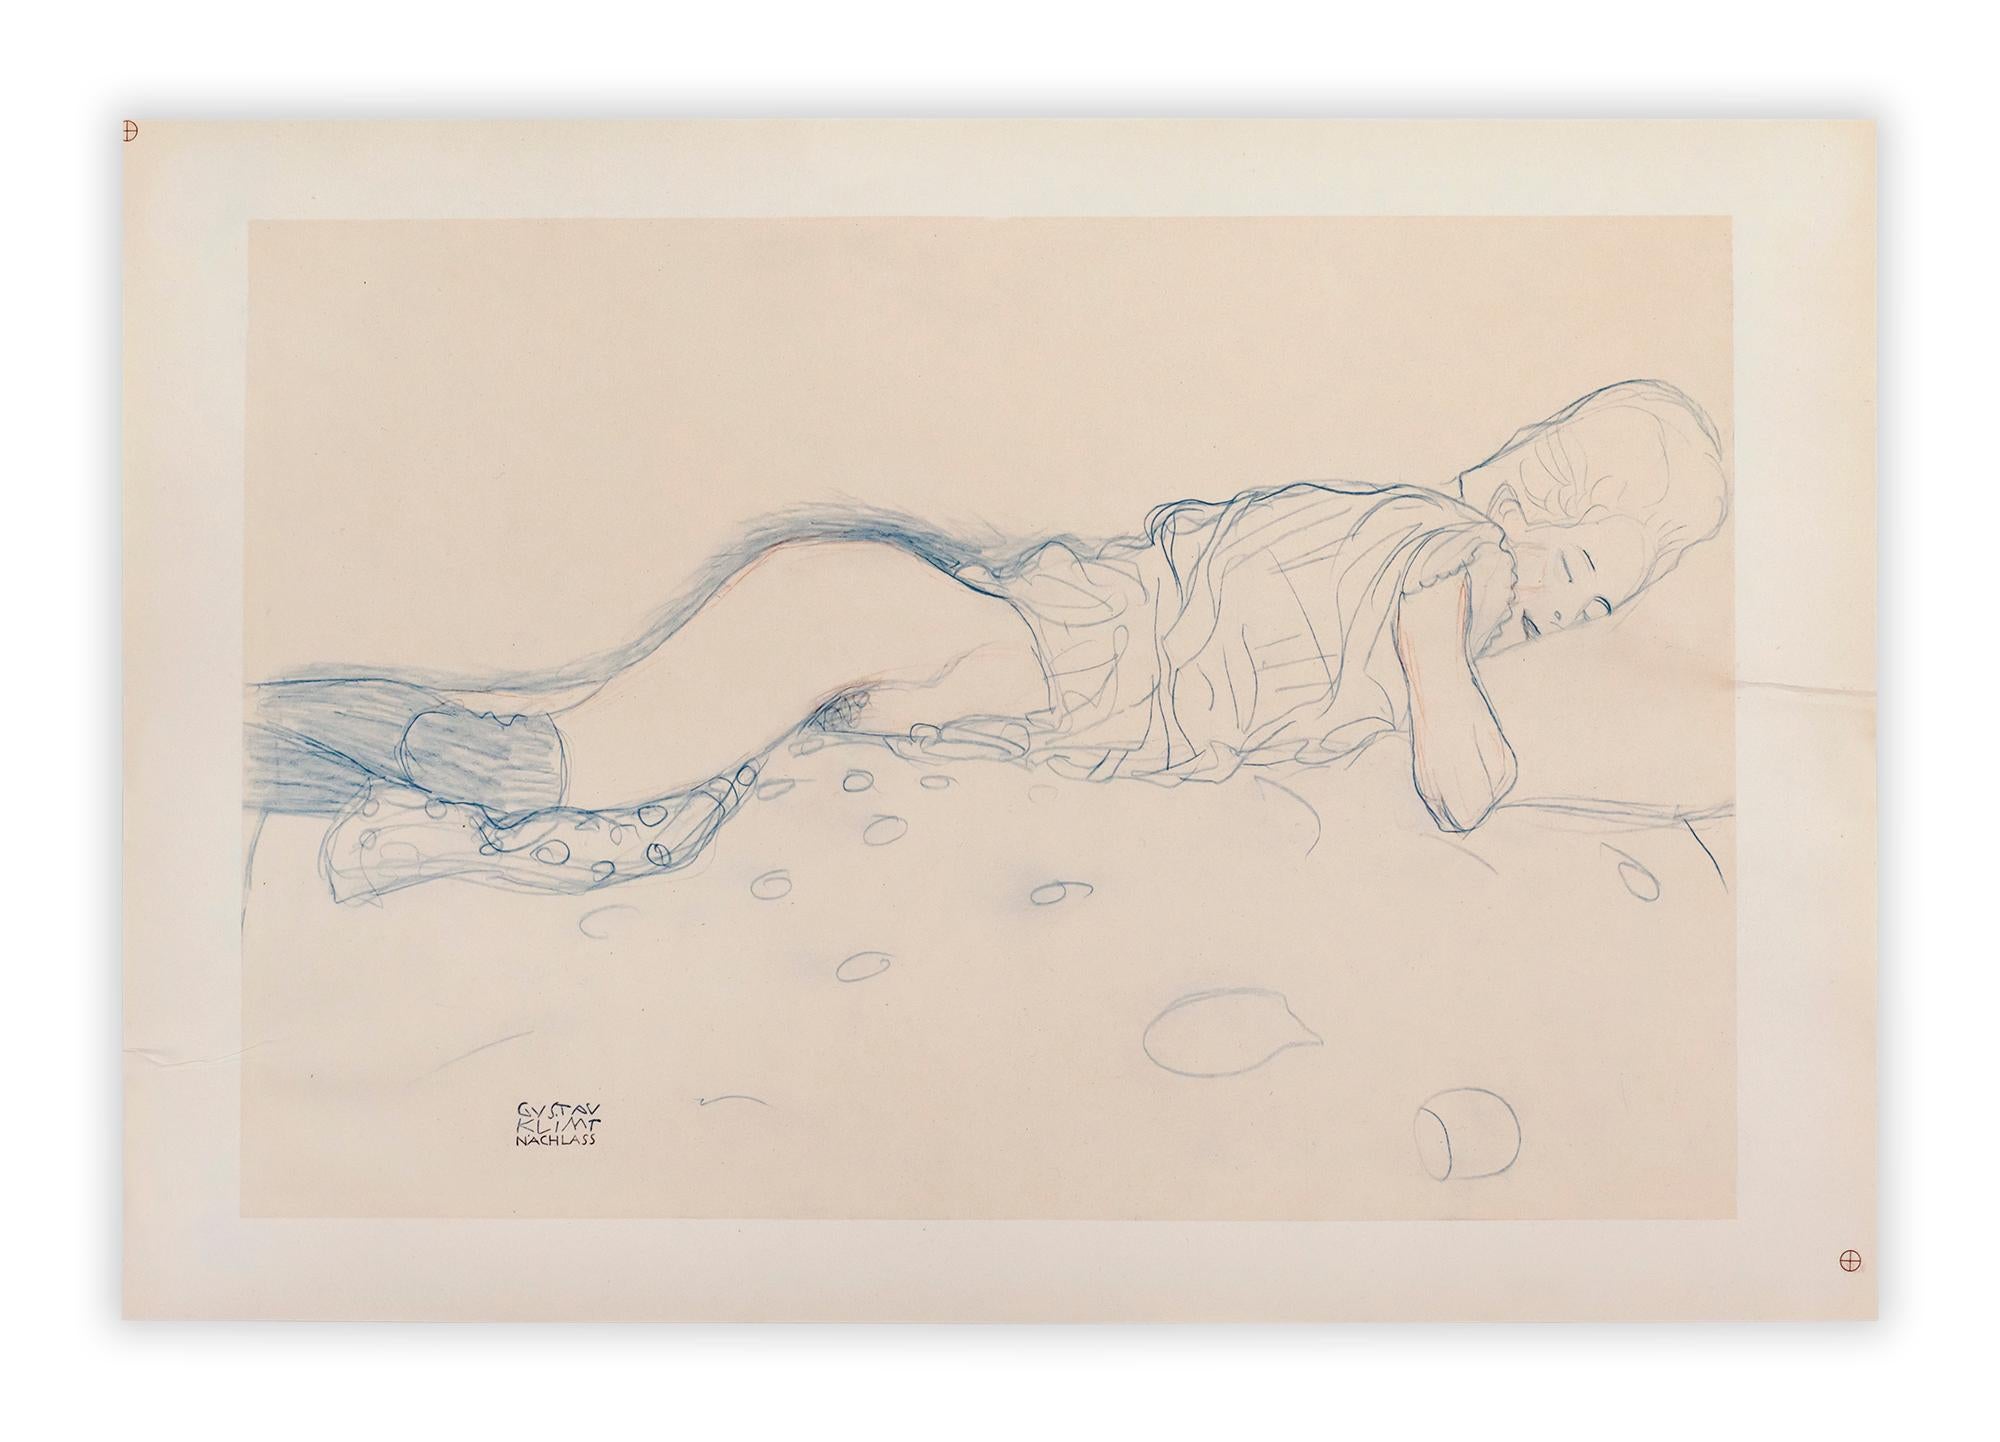 Lithographie en couleurs créée à partir de l'esquisse de Gustav Kilmt représentant une figure semi-nue sur une literie. Édité par Alice Strobl et publié en 1964 par Akademische Druck und Verlagsanstalt Graz à Vienne.

La maîtrise de la profondeur